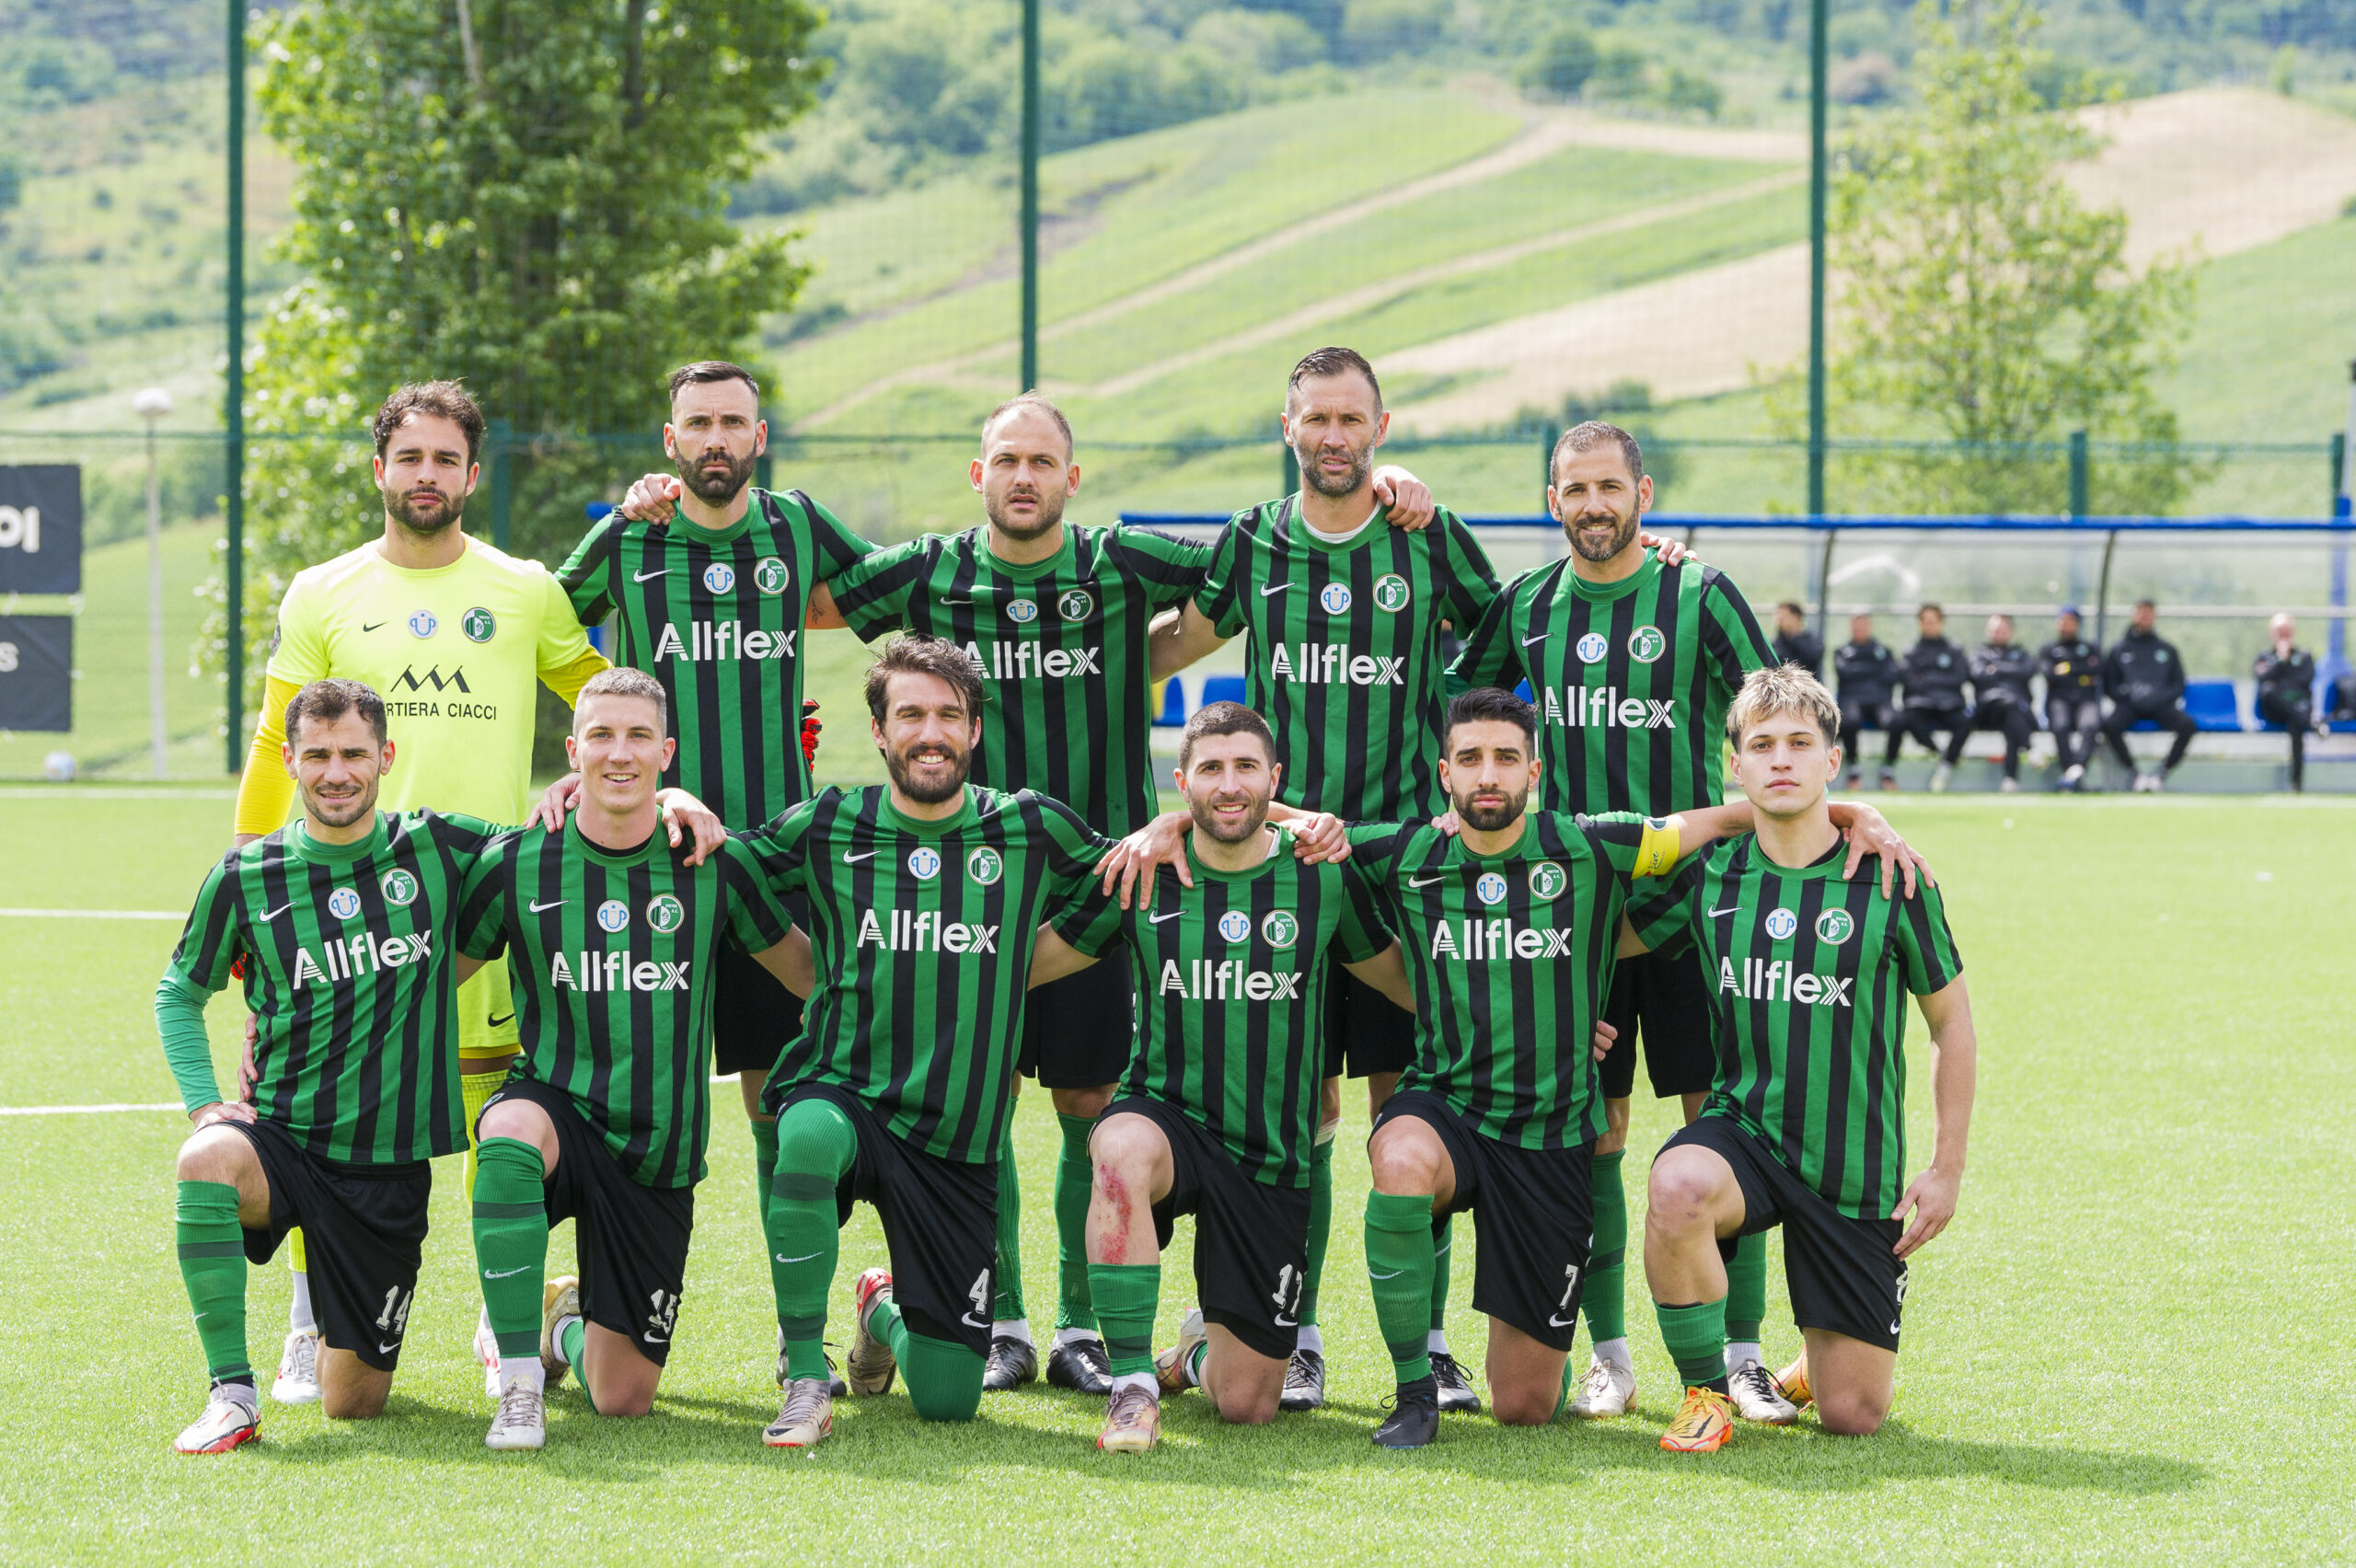 Calcio San Marino, la Virtus entra nella storia: conquistato il suo 1° scudetto